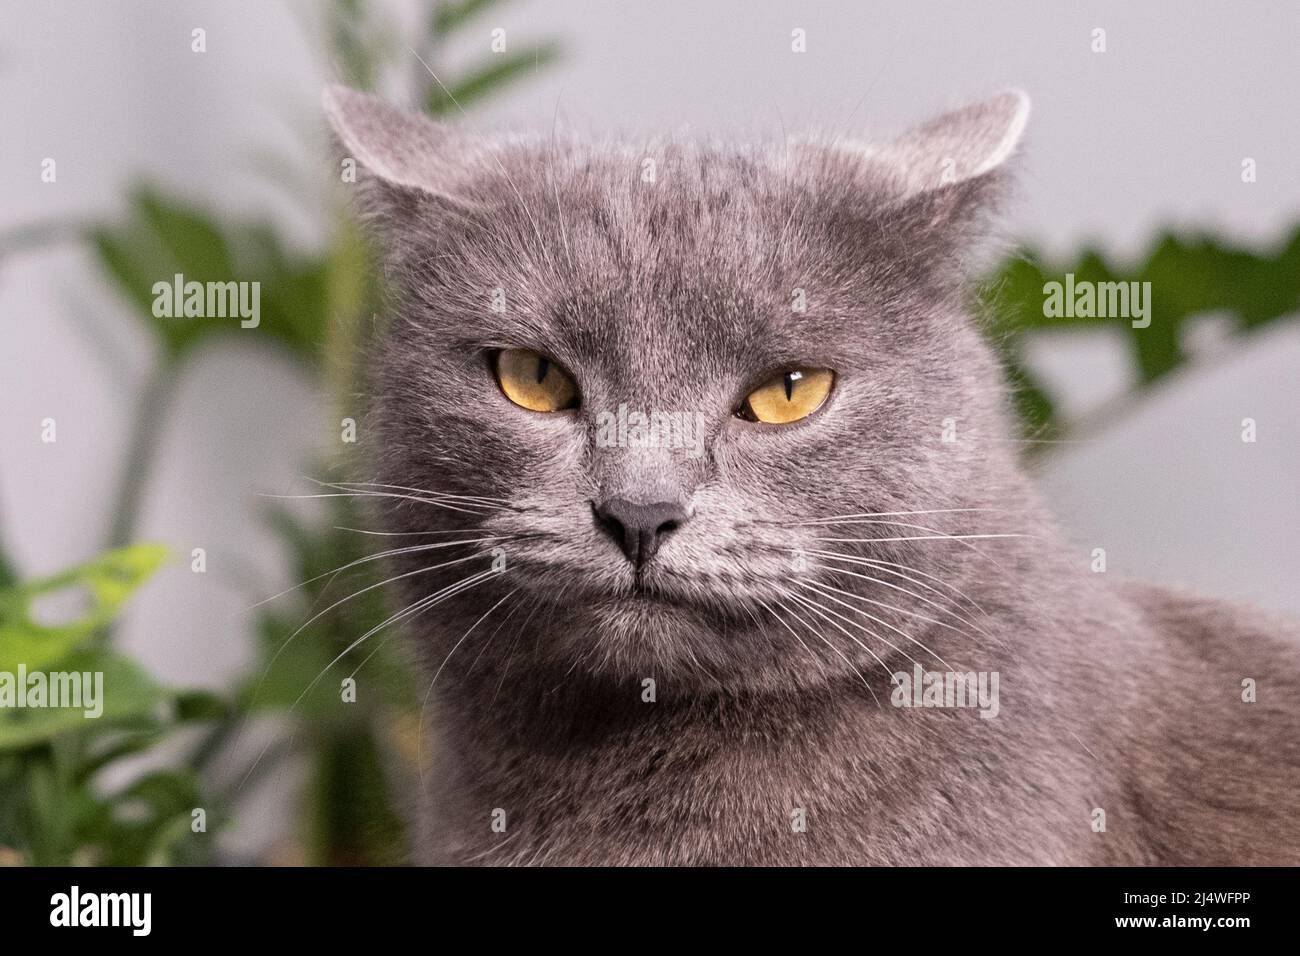 Ritratto di gatto domestico grigio-blu di shorthair con grandi occhi gialli un gatto grigio scozzese. Adorabile animale domestico con un houseplant verde. Shorthair britannico Foto Stock